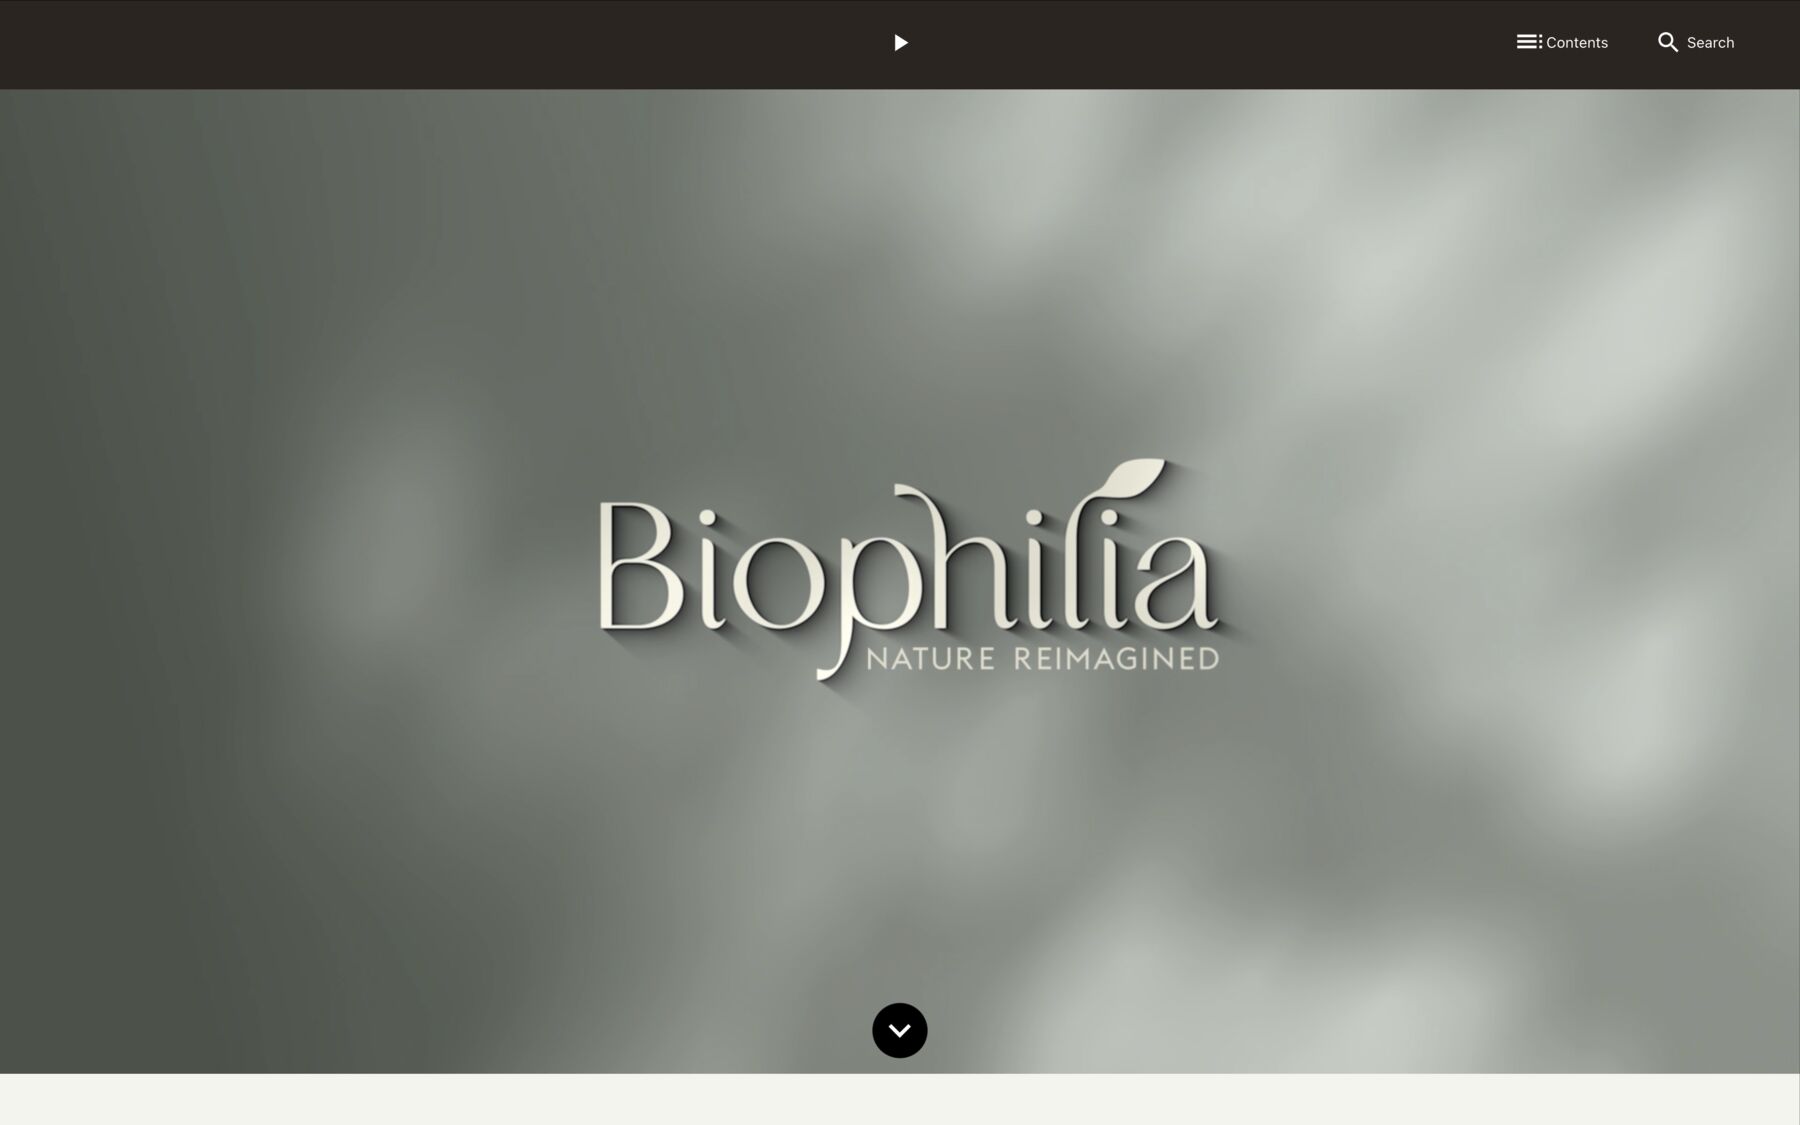 Biophilia: Nature Reimagined